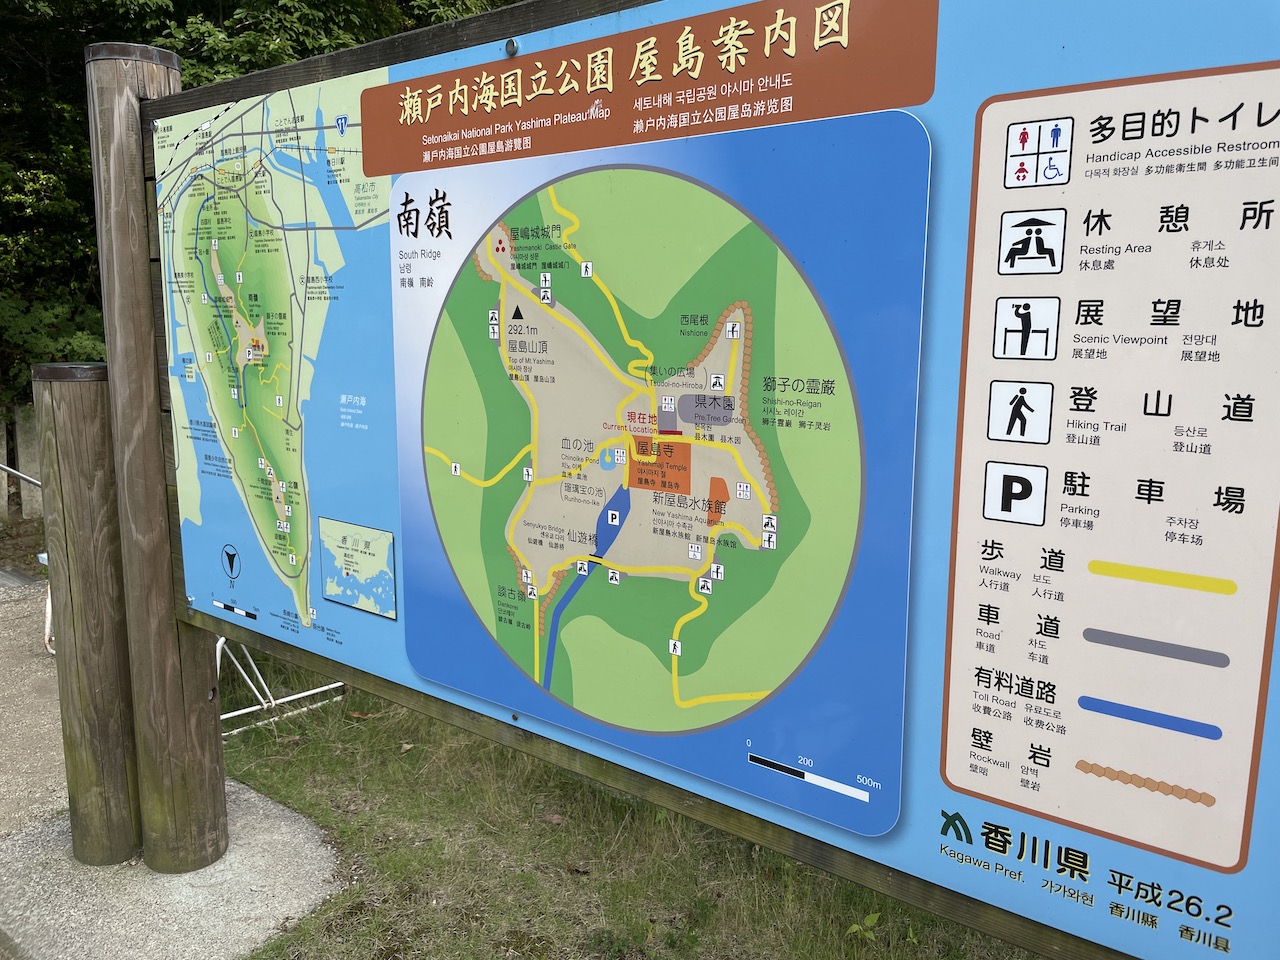 瀬戸内海国立公園の案内図です